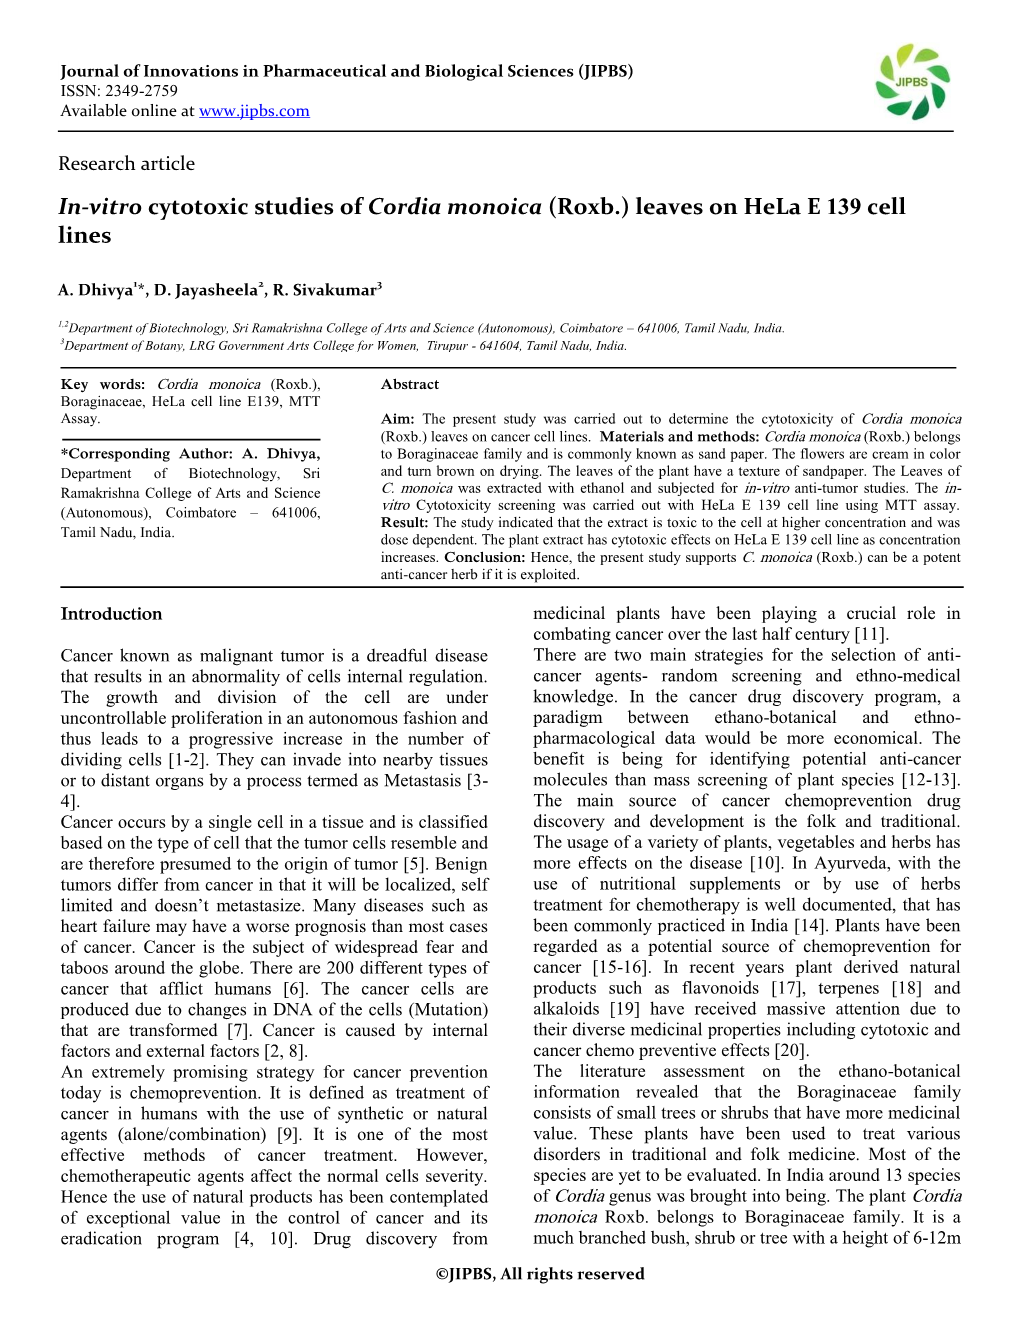 In-Vitro Cytotoxic Studies of Cordia Monoica (Roxb.)